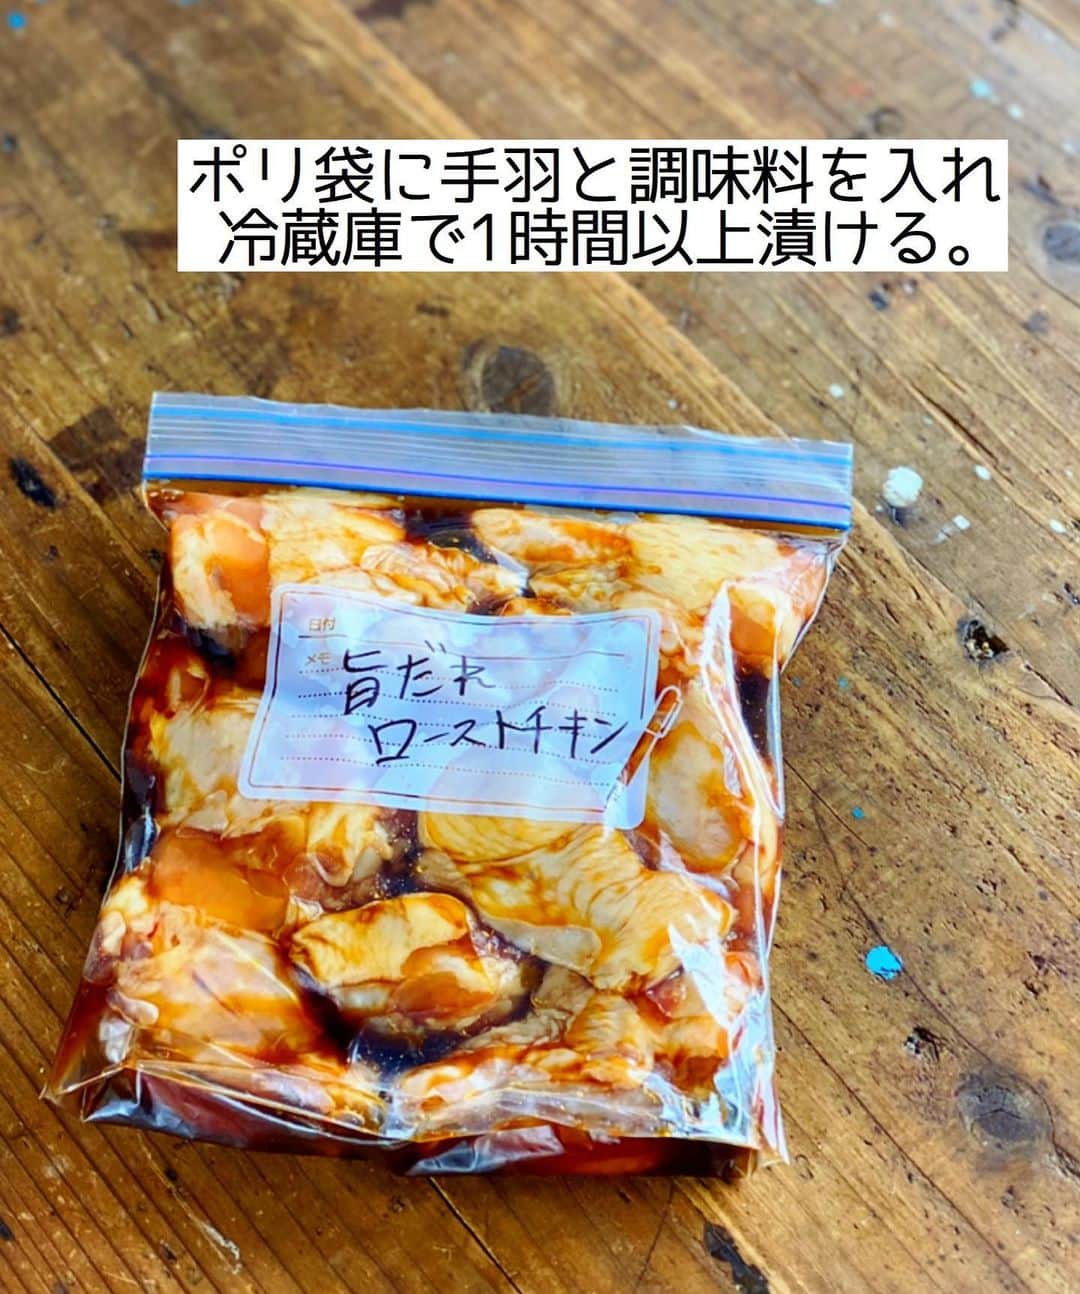 Mizuki【料理ブロガー・簡単レシピ】さんのインスタグラム写真 - (Mizuki【料理ブロガー・簡単レシピ】Instagram)「・﻿ 【#レシピ 】ーーーーーーーーーー﻿ 漬けて焼くだけ！ローストチキン﻿ ーーーーーーーーーーーーーーーー﻿ ﻿ ﻿ ﻿ おはようございます(*^^*)﻿ ﻿ 今日はクリスマスにもおすすめの﻿ \\ #ローストチキン //﻿ ﻿ 醤油ベースのたれに﻿ オイスターソースを加えてコクアップ♩﻿ 漬けて焼くだけ！！﻿ 難しいこと一切なしの﻿ 超〜簡単レシピです(*´艸`)﻿ ﻿ 下味冷凍もできるので﻿ よかったらお試し下さいね(*^^*)﻿ ﻿ ﻿ ﻿ ＿＿＿＿＿＿＿＿＿＿＿＿＿＿＿＿＿＿＿＿﻿ 【作りやすい量】﻿ 手羽元...10本﻿ ●醤油...大2﻿ ●酒...大1﻿ ●みりん・オイスターソース...各大1/2﻿ ●にんにくチューブ...2cm﻿ ﻿ 1.ポリ袋に手羽と●を入れて揉み込み、冷蔵庫で1時間以上漬ける。﻿ 2.汁気を軽く切り、クッキングシートを敷いた天板に並べ、200度に予熱したオーブンで30分焼く。﻿ (漬けだれは残しておき、焼き上がり5分前に塗るとテリアップ&しっかり味に！)﻿ ￣￣￣￣￣￣￣￣￣￣￣￣￣￣￣￣￣￣￣￣﻿ ﻿ ﻿ ﻿ 《ポイント》﻿ ♦︎漬けた状態で冷凍可(冷凍作り置き)♩解凍してから焼いて下さい♩﻿ ♦(好みで)手羽に切り込みを入れておくと、短時間で中まで味が染みます♩﻿ ﻿ ﻿ ﻿ ﻿ ﻿ ﻿ ﻿ ﻿ 📕新刊予約開始しました📕﻿ 【ラクしておいしい！#1品晩ごはん 】﻿ ￣￣￣￣￣￣￣￣￣￣￣￣￣￣￣￣￣﻿ 私たちだってヘトヘトな日がある•••﻿ 毎日何品も作っていられない•••﻿ もうごはんに悩みたくない😢﻿ そう思うことってありませんか？﻿ そんな時、1品ごはんはいかがでしょう？﻿ というご提案です✨﻿ ﻿ ﻿ 【1品ごはん】は﻿ 副菜いらずで全てがシンプル！﻿ ￣￣￣￣￣￣￣￣￣￣￣￣￣￣￣￣￣￣﻿ 一品つくるだけでいいから﻿ 献立を考えなくてよし！﻿ ￣￣￣￣￣￣￣￣￣￣￣￣￣￣￣￣￣￣﻿ 悩まない、疲れない、﻿ 気力や時間がなくてもなんとかなる！﻿ ￣￣￣￣￣￣￣￣￣￣￣￣￣￣￣￣￣￣﻿ そんな頼りになる﻿ 便利なお助けごはんです☺️💕﻿ (ハイライトに🔗貼っています✨)﻿ ￣￣￣￣￣￣￣￣￣￣￣￣￣￣￣￣￣﻿ ﻿ ﻿ ﻿ ﻿ ﻿ ⭐️発売中⭐️﻿ ＿＿＿＿＿＿＿＿＿＿＿＿＿＿＿＿＿＿﻿ しんどくない献立、考えました♩﻿ \15分でいただきます/﻿ 📕#Mizukiの2品献立 📕﻿ ﻿ 和食をもっとカジュアルに♩﻿ \毎日のごはんがラクになる/﻿ 📘#Mizukiの今どき和食 📘﻿ ﻿ ホケミレシピの決定版♩﻿ \はじめてでも失敗しない/﻿ 📙ホットケーキミックスのお菓子 📙﻿ ﻿ NHKまる得マガジンテキスト☆﻿ ホットケーキミックスで﻿ 📗絶品おやつ&意外なランチ📗﻿ ￣￣￣￣￣￣￣￣￣￣￣￣￣￣￣￣￣￣﻿ ﻿ ﻿ ﻿ ＿＿＿＿＿＿＿＿＿＿＿＿＿＿＿＿＿＿﻿ レシピを作って下さった際や﻿ レシピ本についてのご投稿には﻿ タグ付け( @mizuki_31cafe )して﻿ お知らせいただけると嬉しいです😊💕﻿ ￣￣￣￣￣￣￣￣￣￣￣￣￣￣￣￣￣￣﻿ ﻿ ﻿ ﻿ ﻿ #チキン#クリスマス#手羽元#Mizuki#簡単レシピ#時短レシピ#節約レシピ#料理#フーディーテーブル#マカロニメイト#おうちごはん#デリスタグラマー#料理好きな人と繋がりたい#食べ物#料理記録#おうちごはんlover#写真好きな人と繋がりたい#foodpic#cooking#recipe#lin_stagrammer#foodporn#yummy#f52grams#ローストチキンm」12月19日 7時38分 - mizuki_31cafe